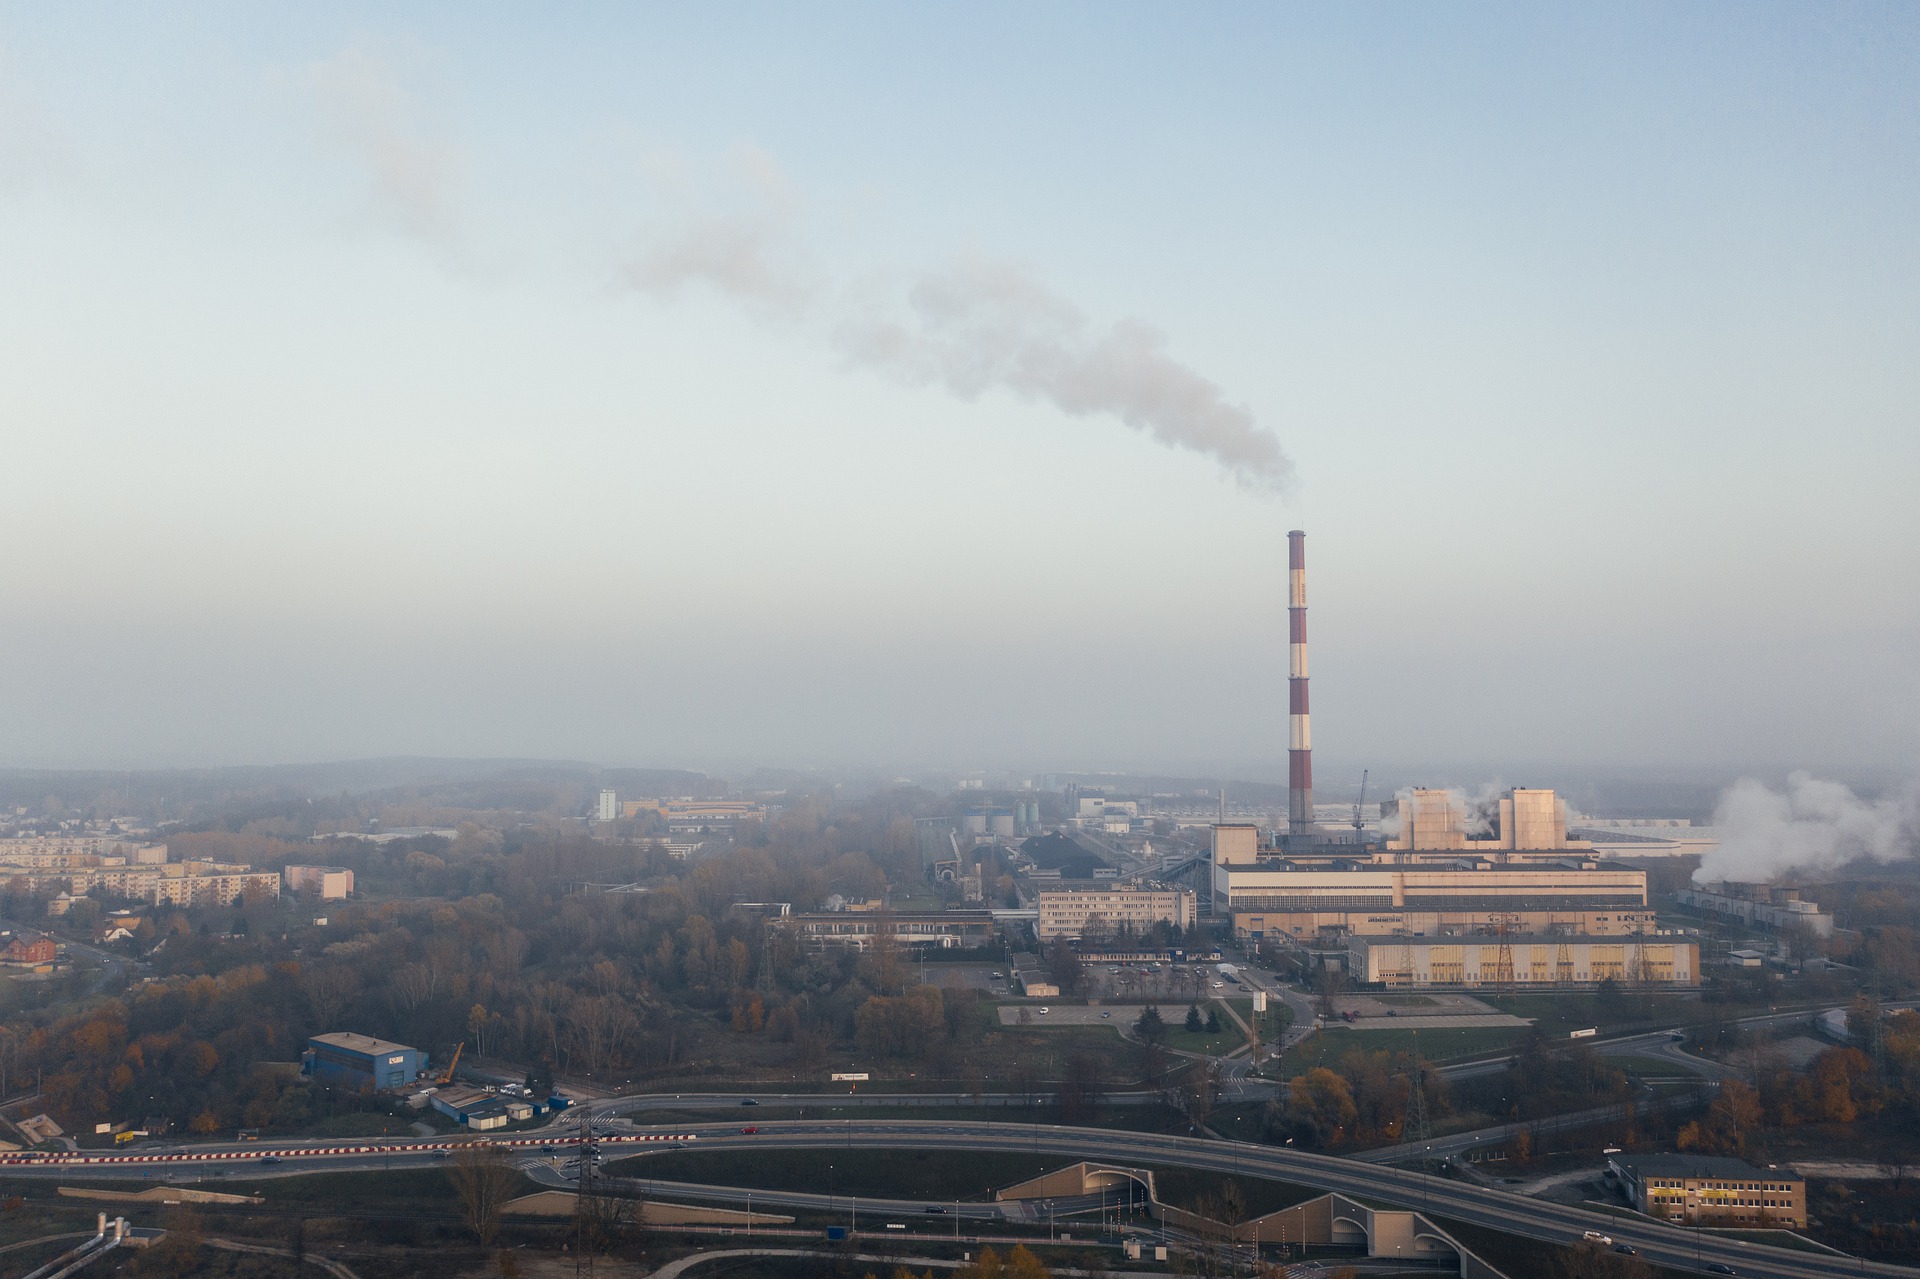 Investidores cobram políticas climáticas mais consistentes de governos. Na imagem, chaminé de fábrica liberando gases poluentes (Foto: Pixabay)